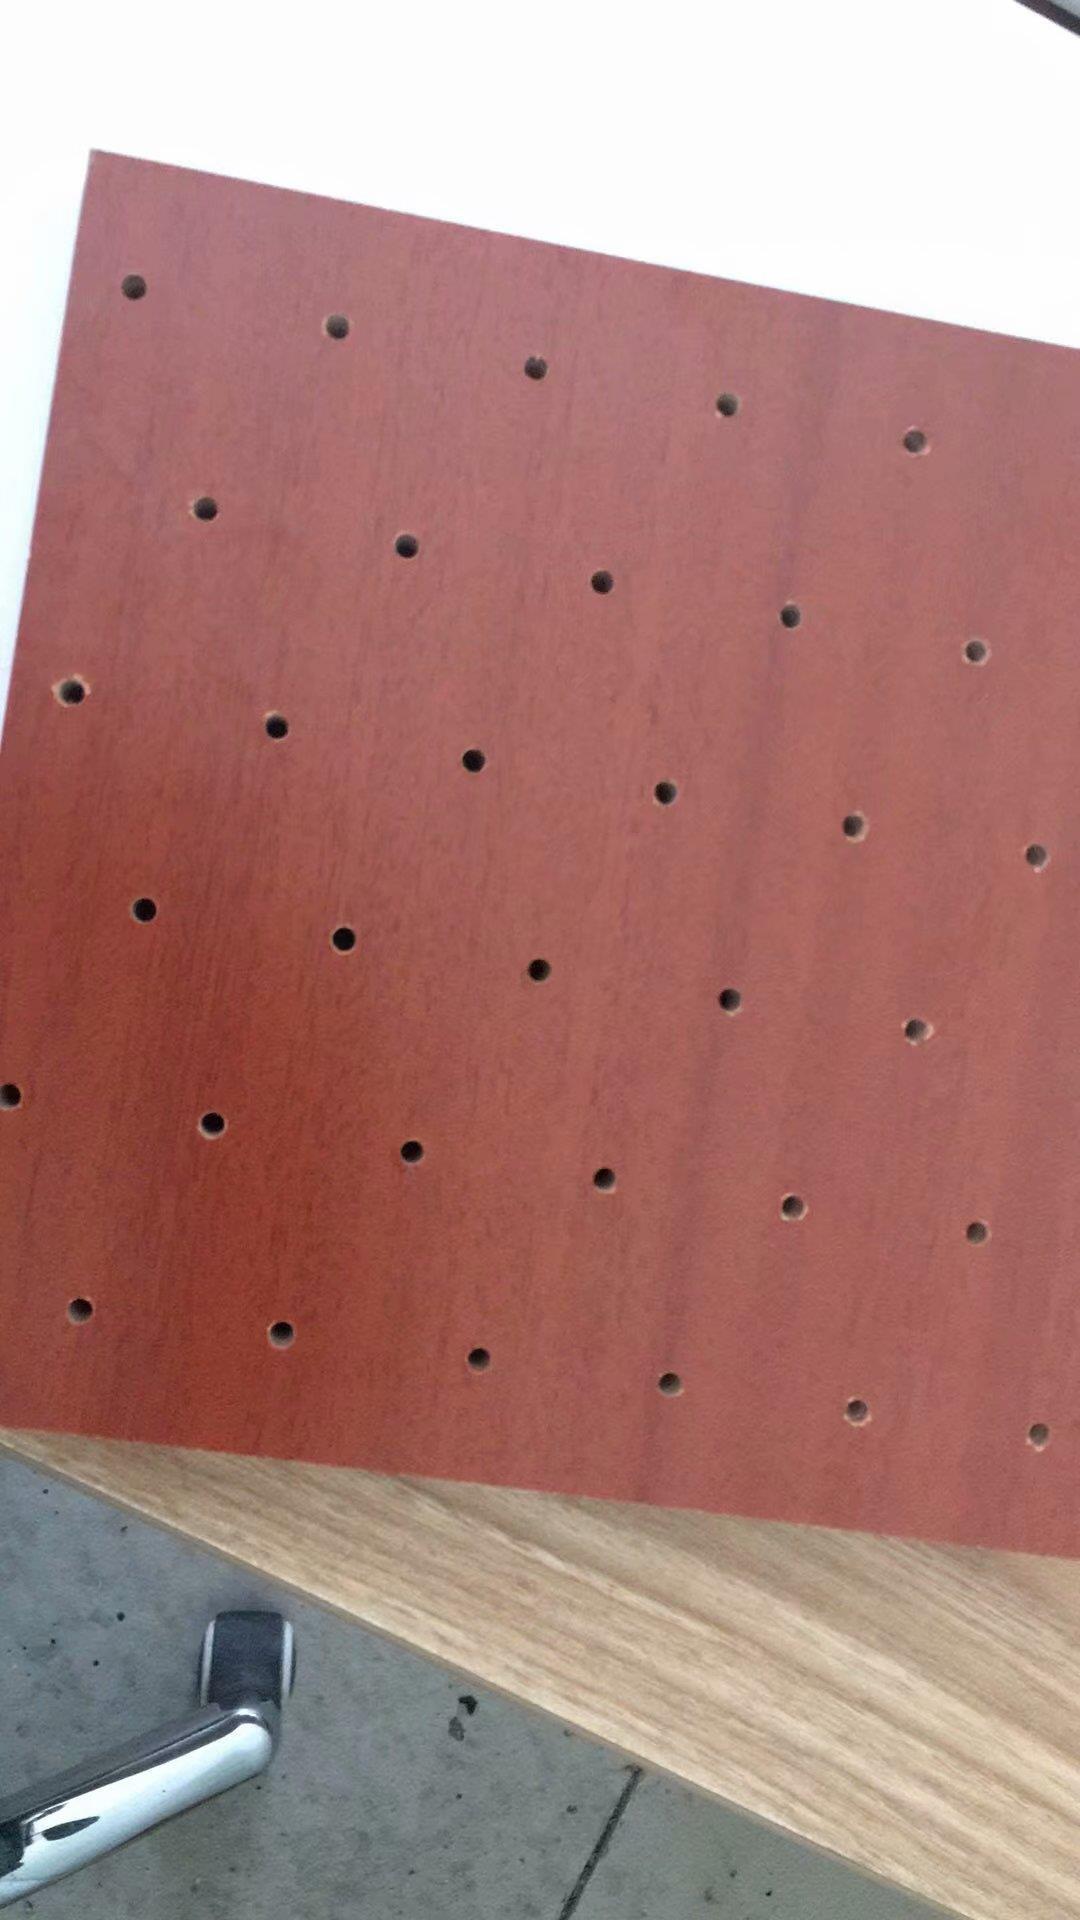 槽型竹木纤维吸音板_岳阳剧院穿孔木质吸音板哪个品牌好 君磊